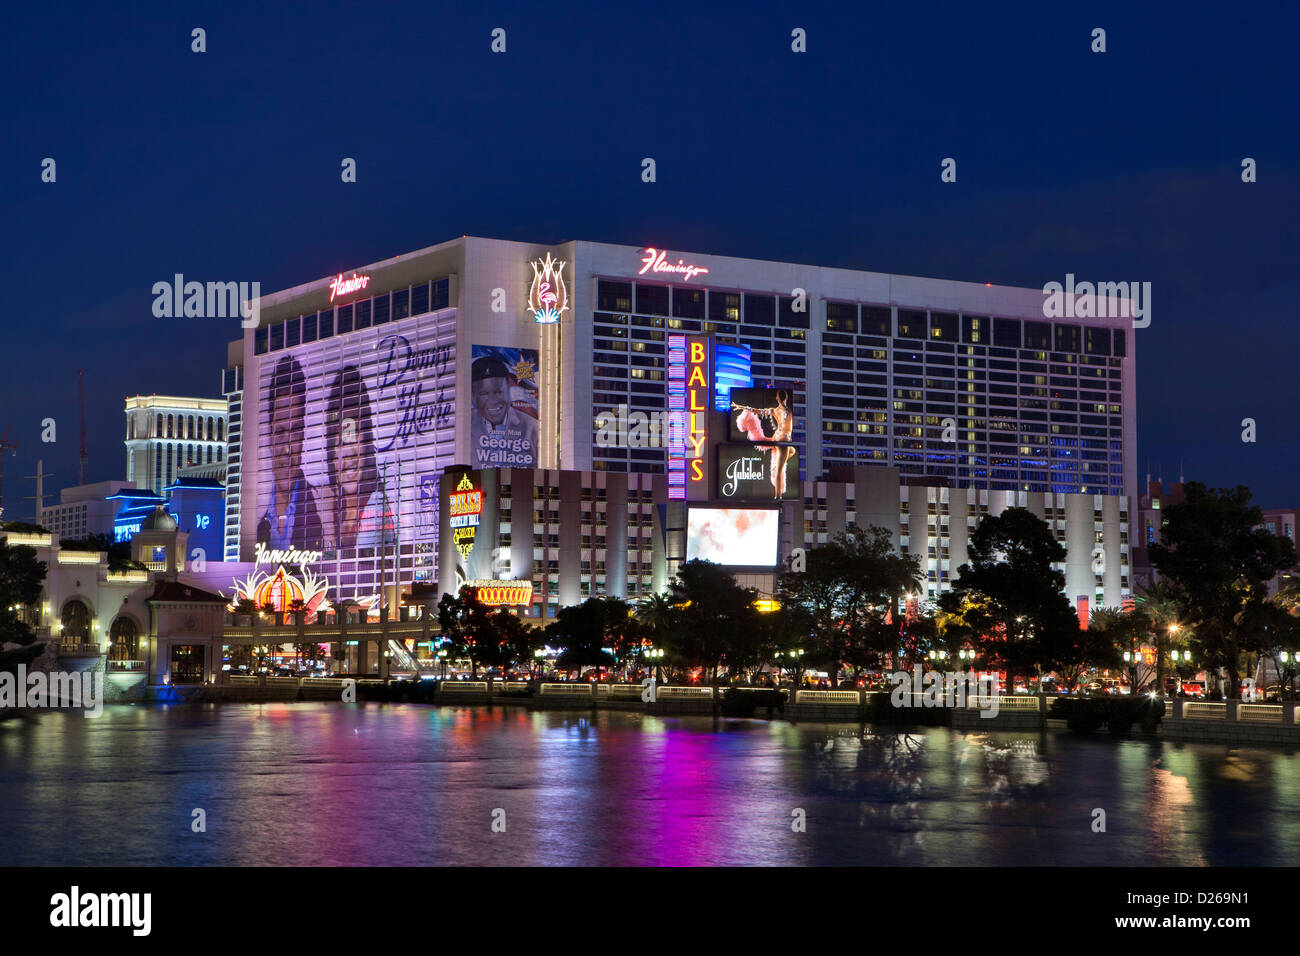 Flamingo hotel and casino on Las Vegas Blvd. at night-Las Vegas, Nevada, USA. Stock Photo